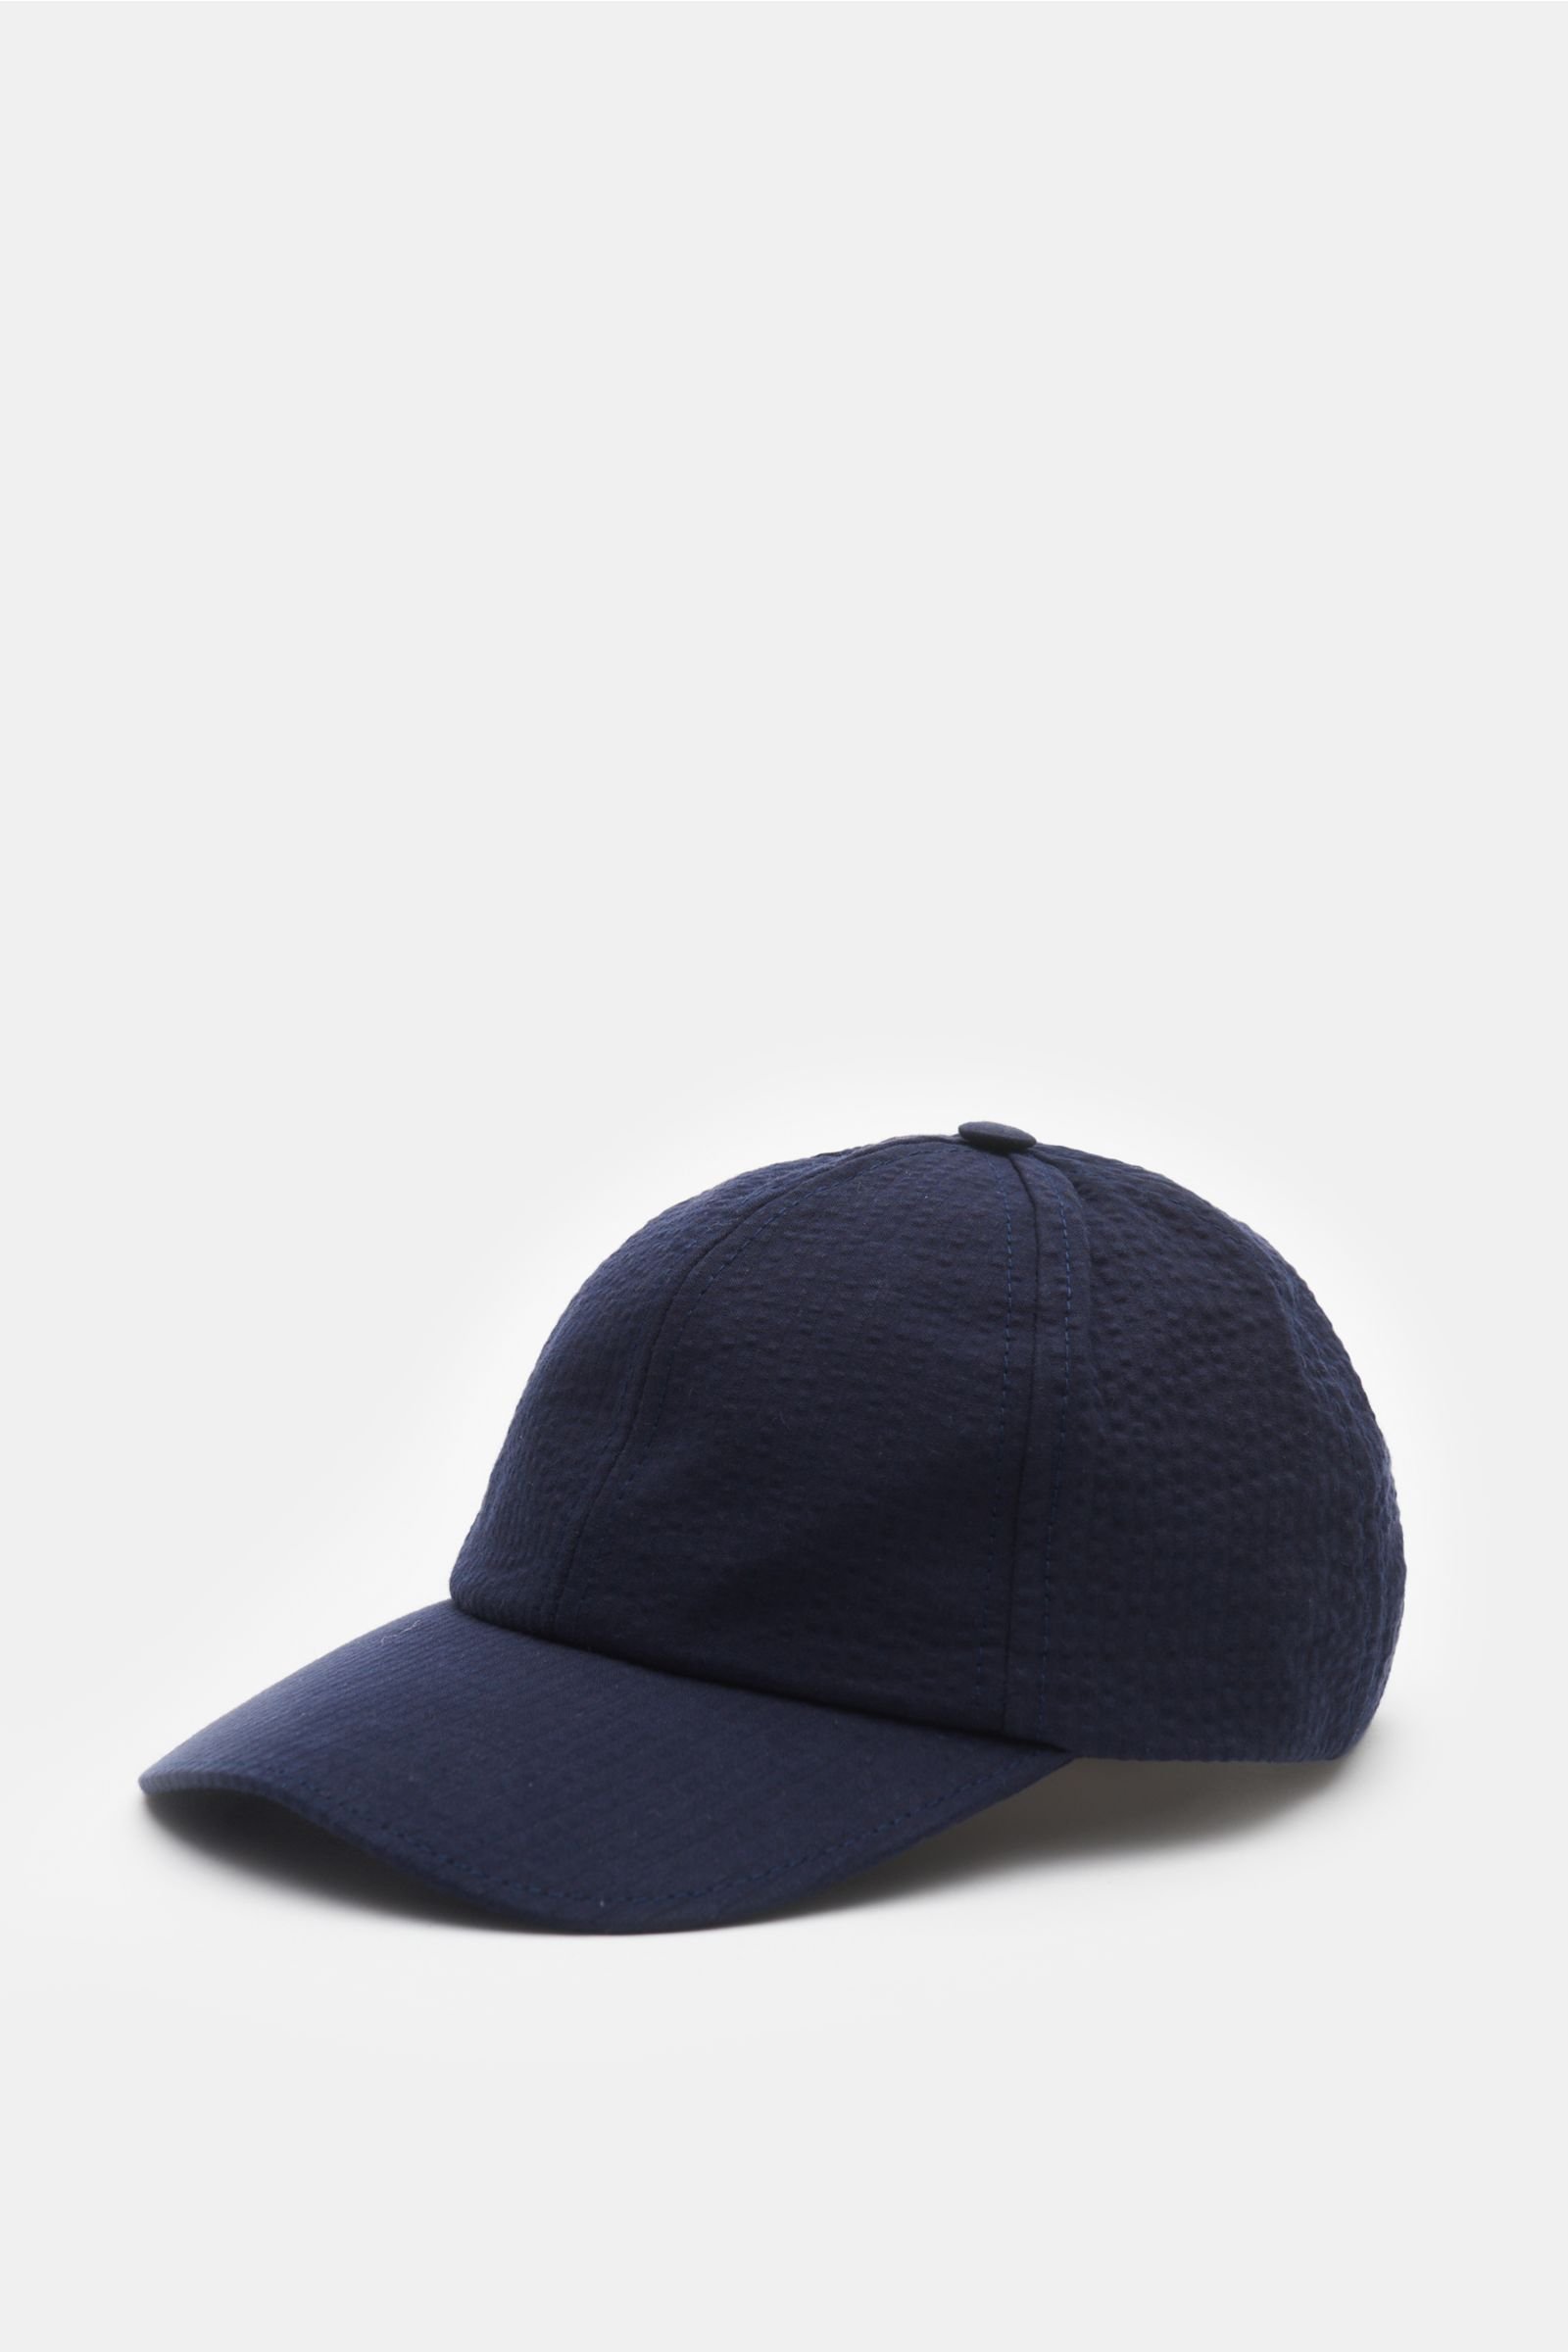 Seersucker baseball cap navy